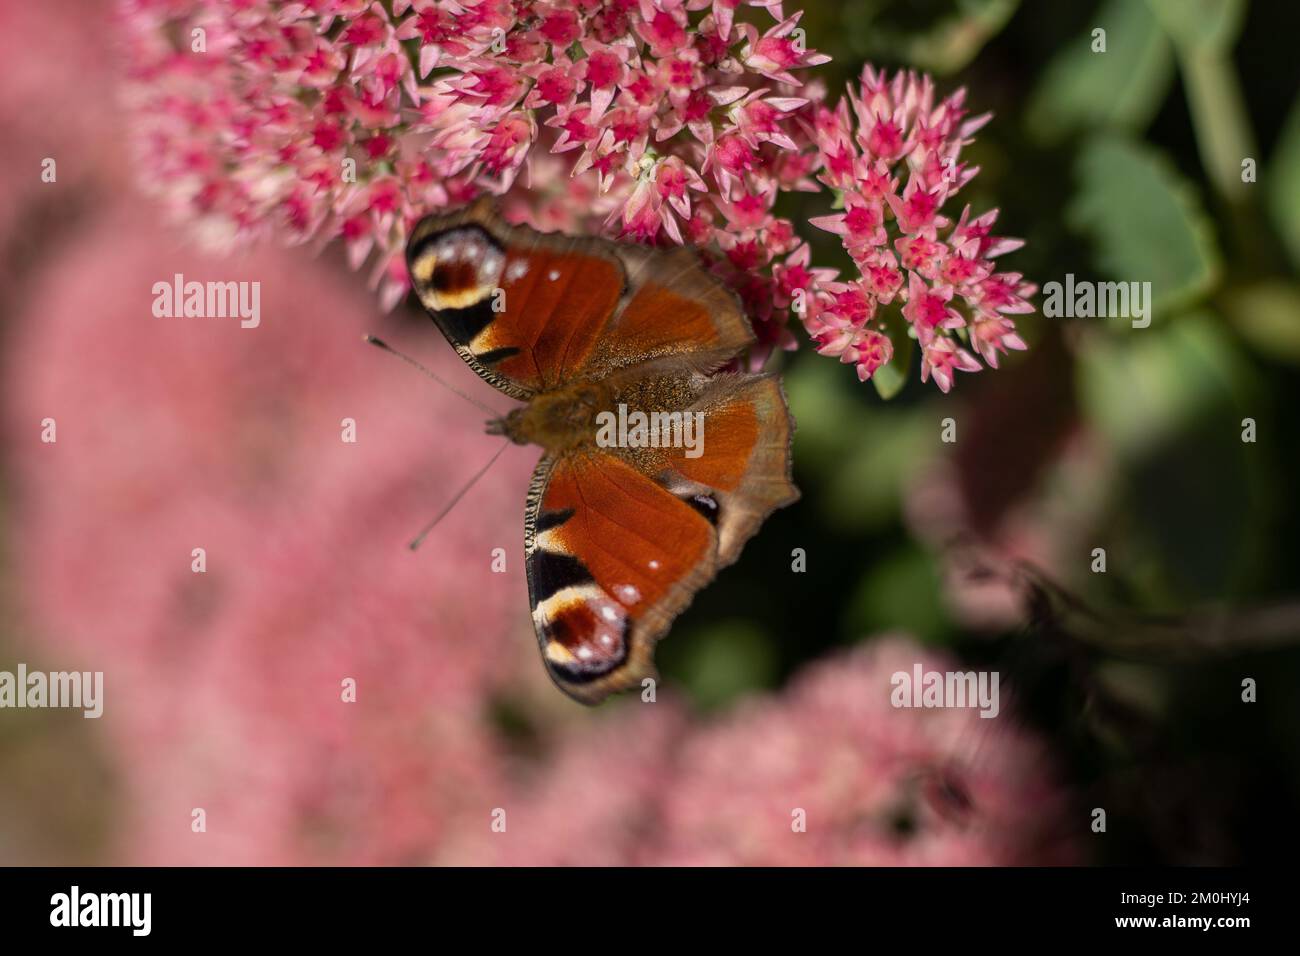 Ein Pfauenschmetterling frisst auf einer rosa Sedum-Blume - Hase-Kohl. Ein Blumenbeet mit Blumen, die von Insekten bestäubt werden. Schmetterlinge fliegen. Natur sonnigen Tag. Insekt. Schmetterlingsflügel. Grüne Pflanze aus nächster Nähe. Stockfoto